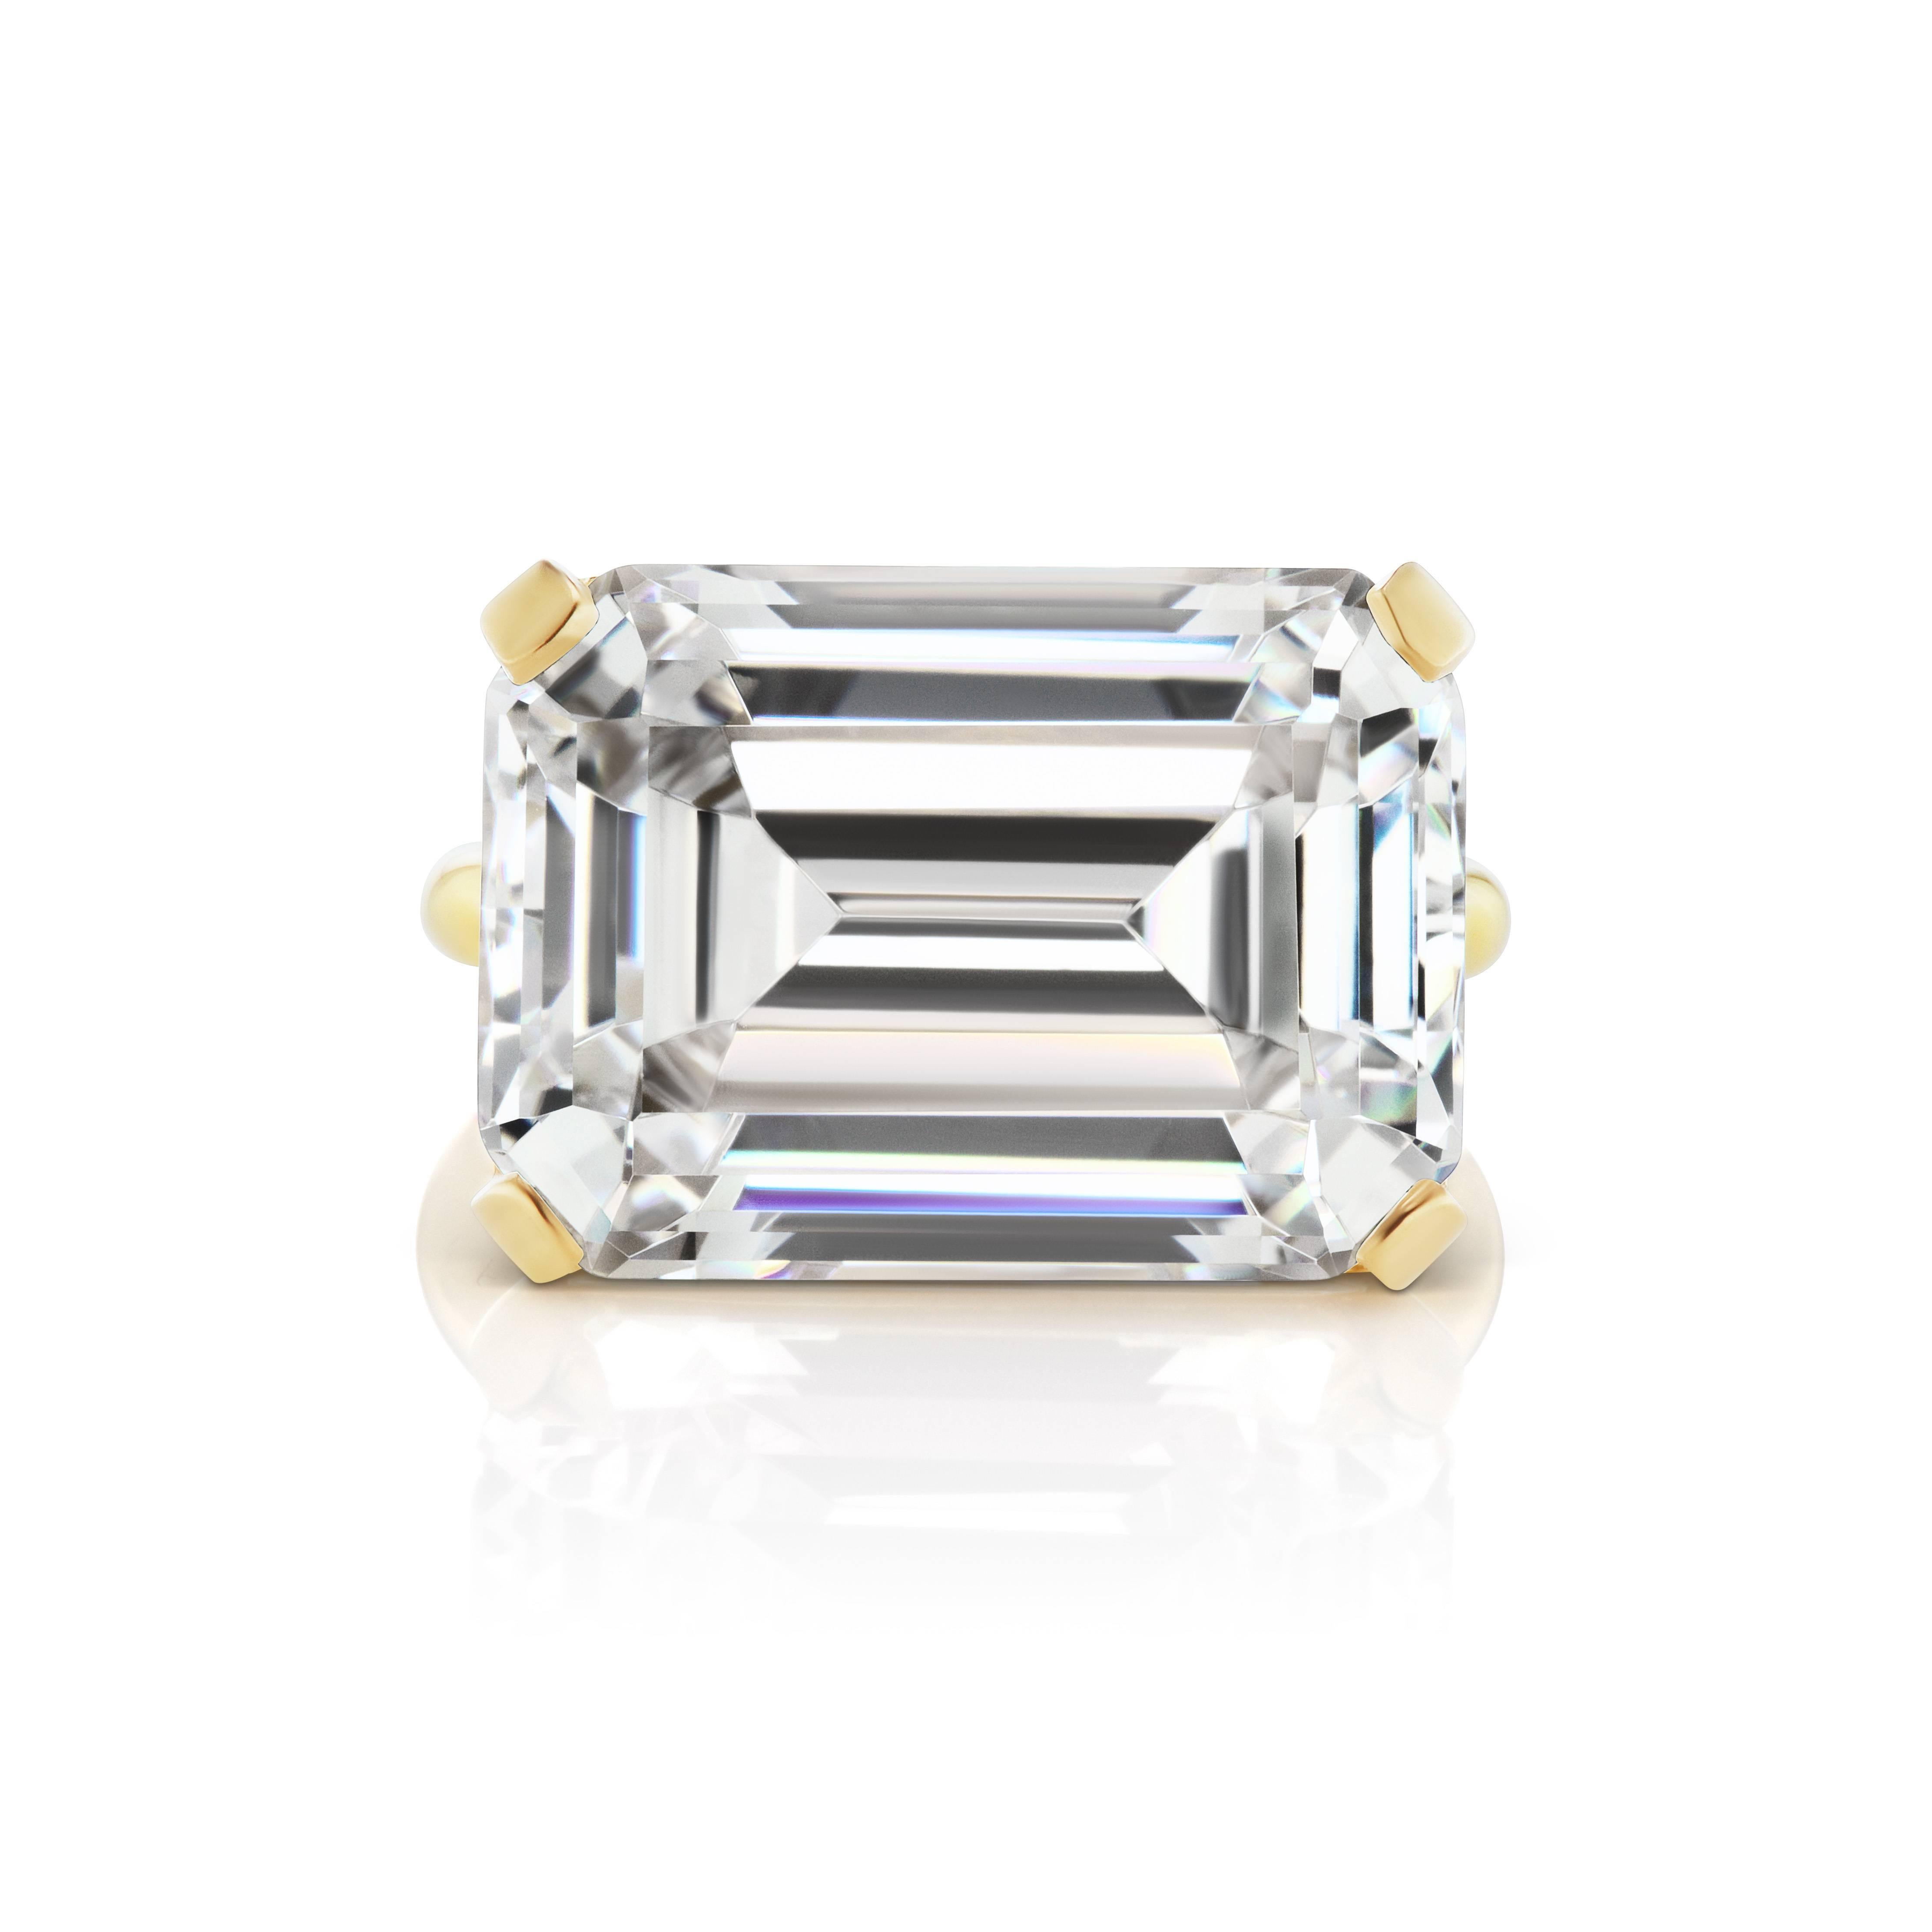 Prächtig  Modeschmuck Faux Emerald Cut 15 Karat Diamant  Moderner Ring mit Vermeil-Fassung. Dieser neu entworfene Ring misst 3/4 Zoll im Durchmesser, ist einen halben Zoll breit und sitzt 1/4 Zoll auf dem Finger. Schick, mutig, beeindruckend. Freie